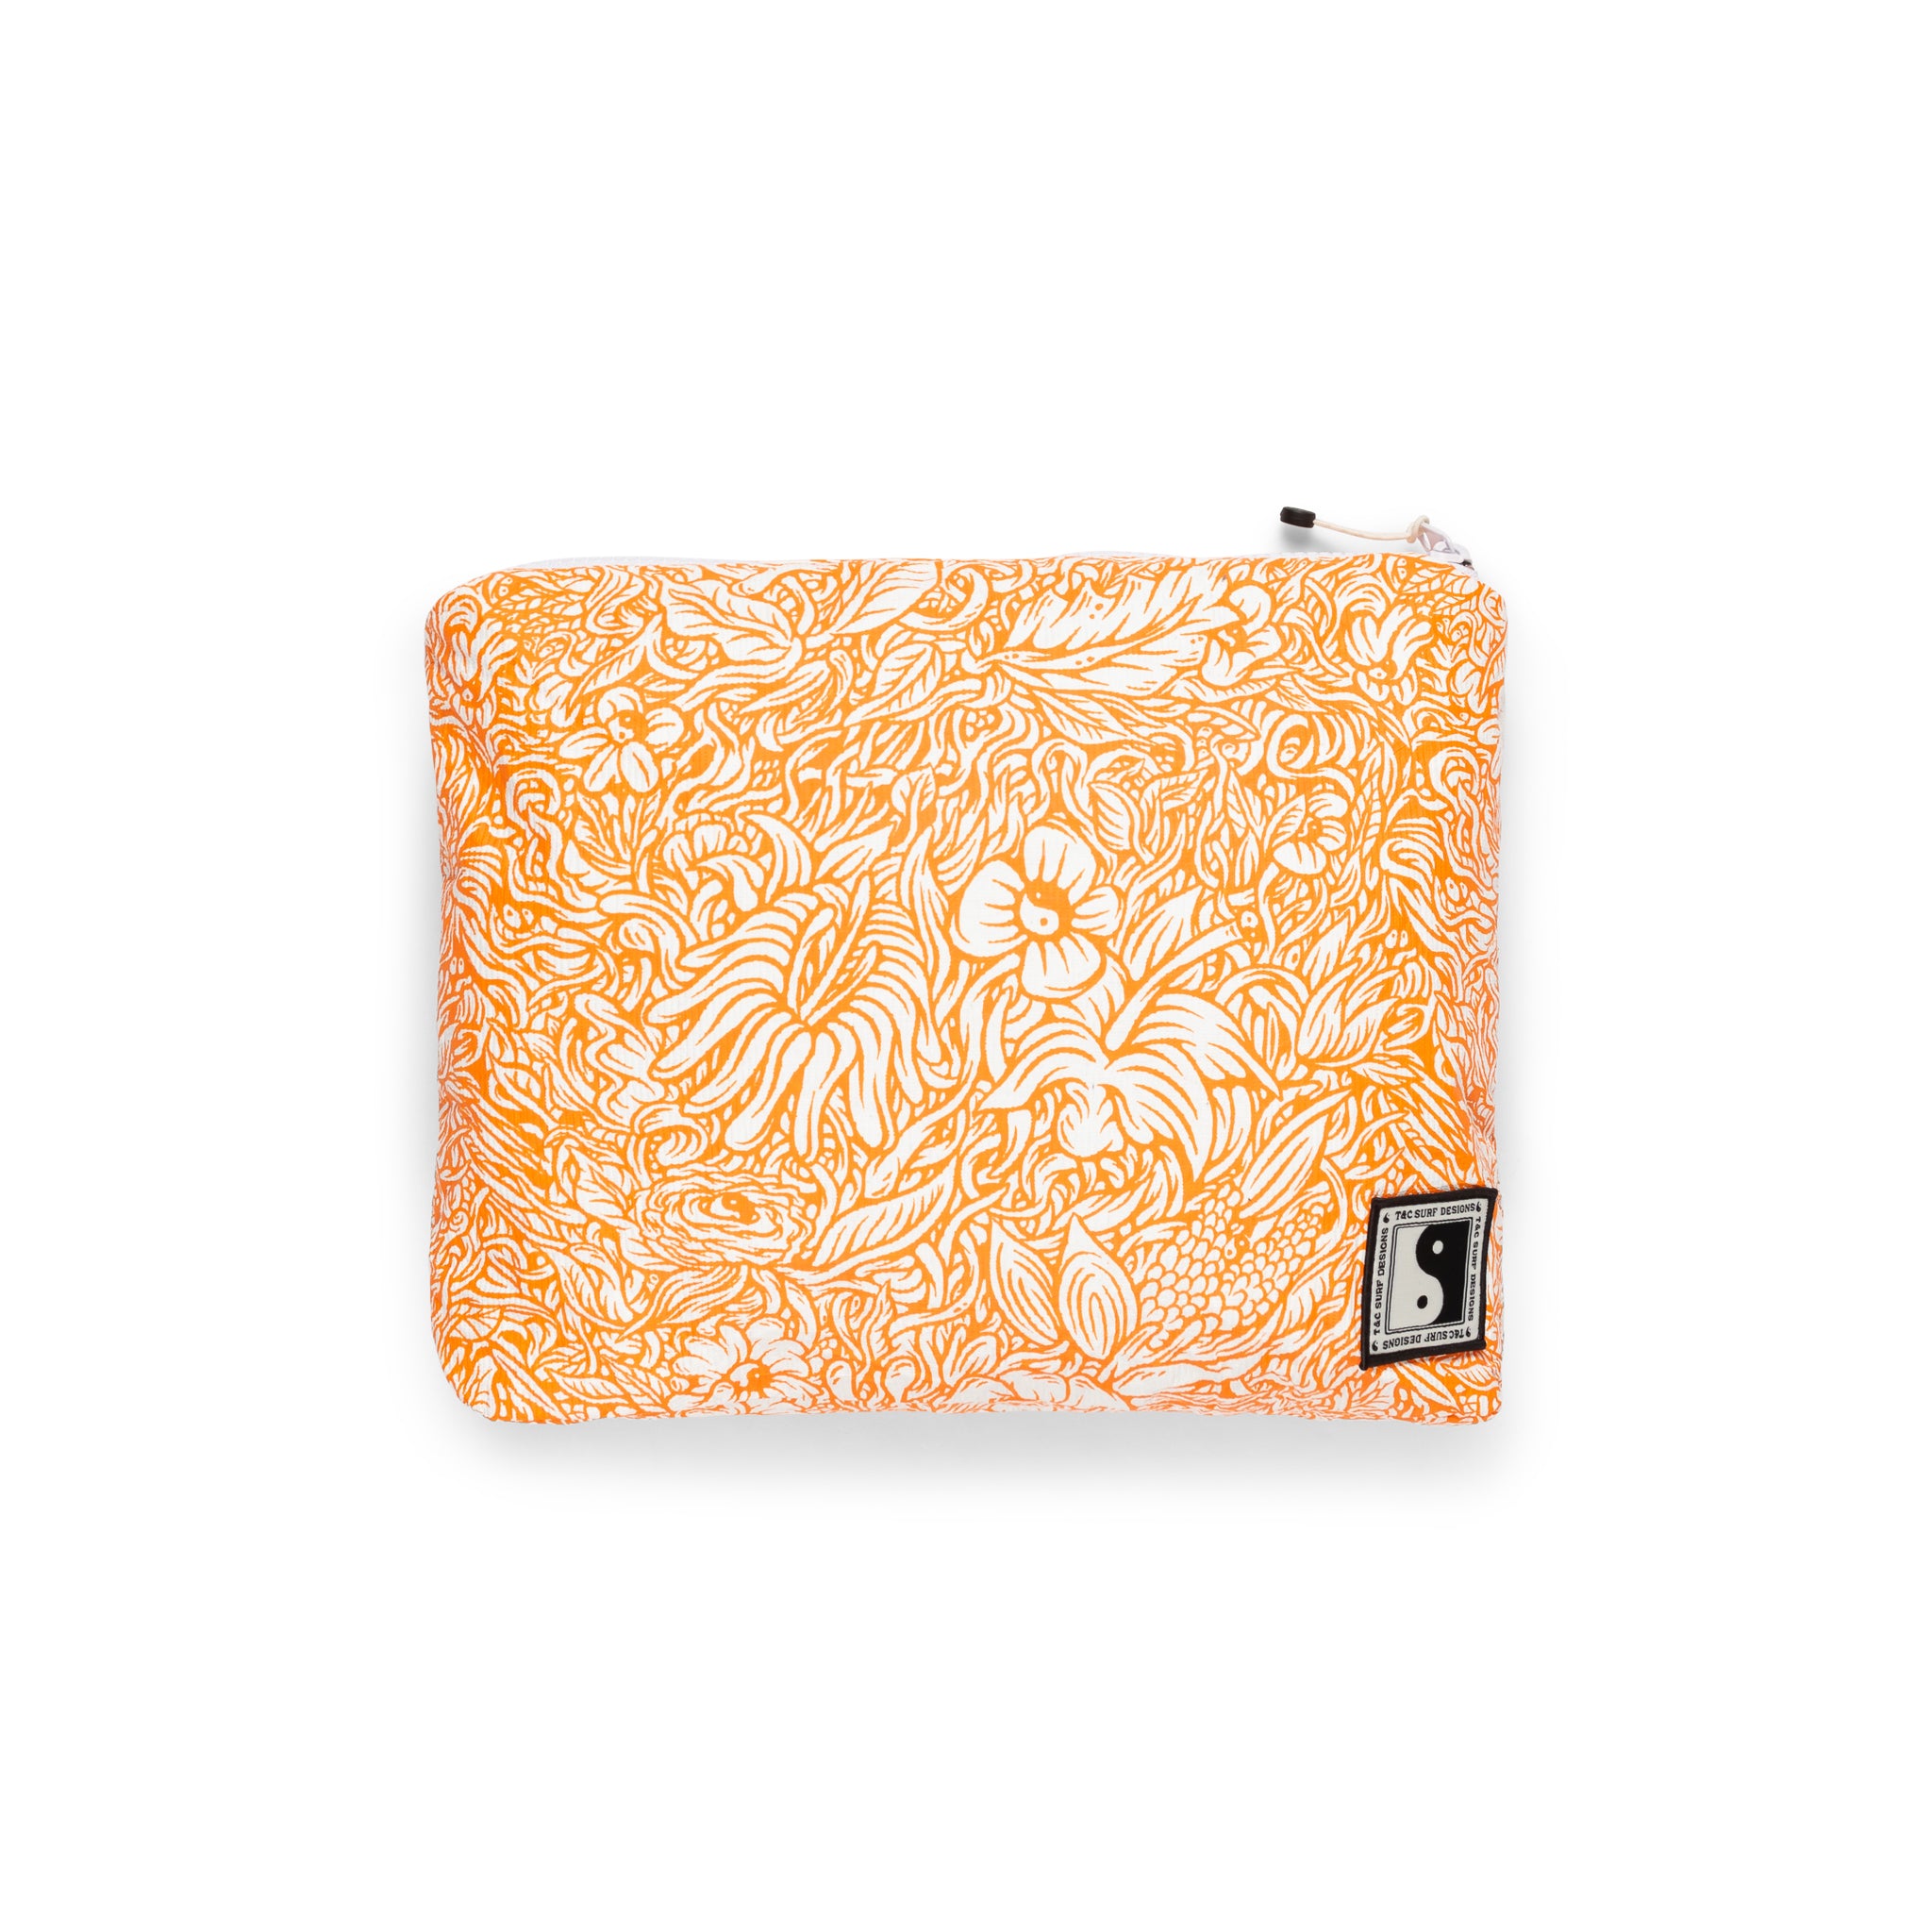 T&C Surf Designs M Printed Pouch- Orange Flower